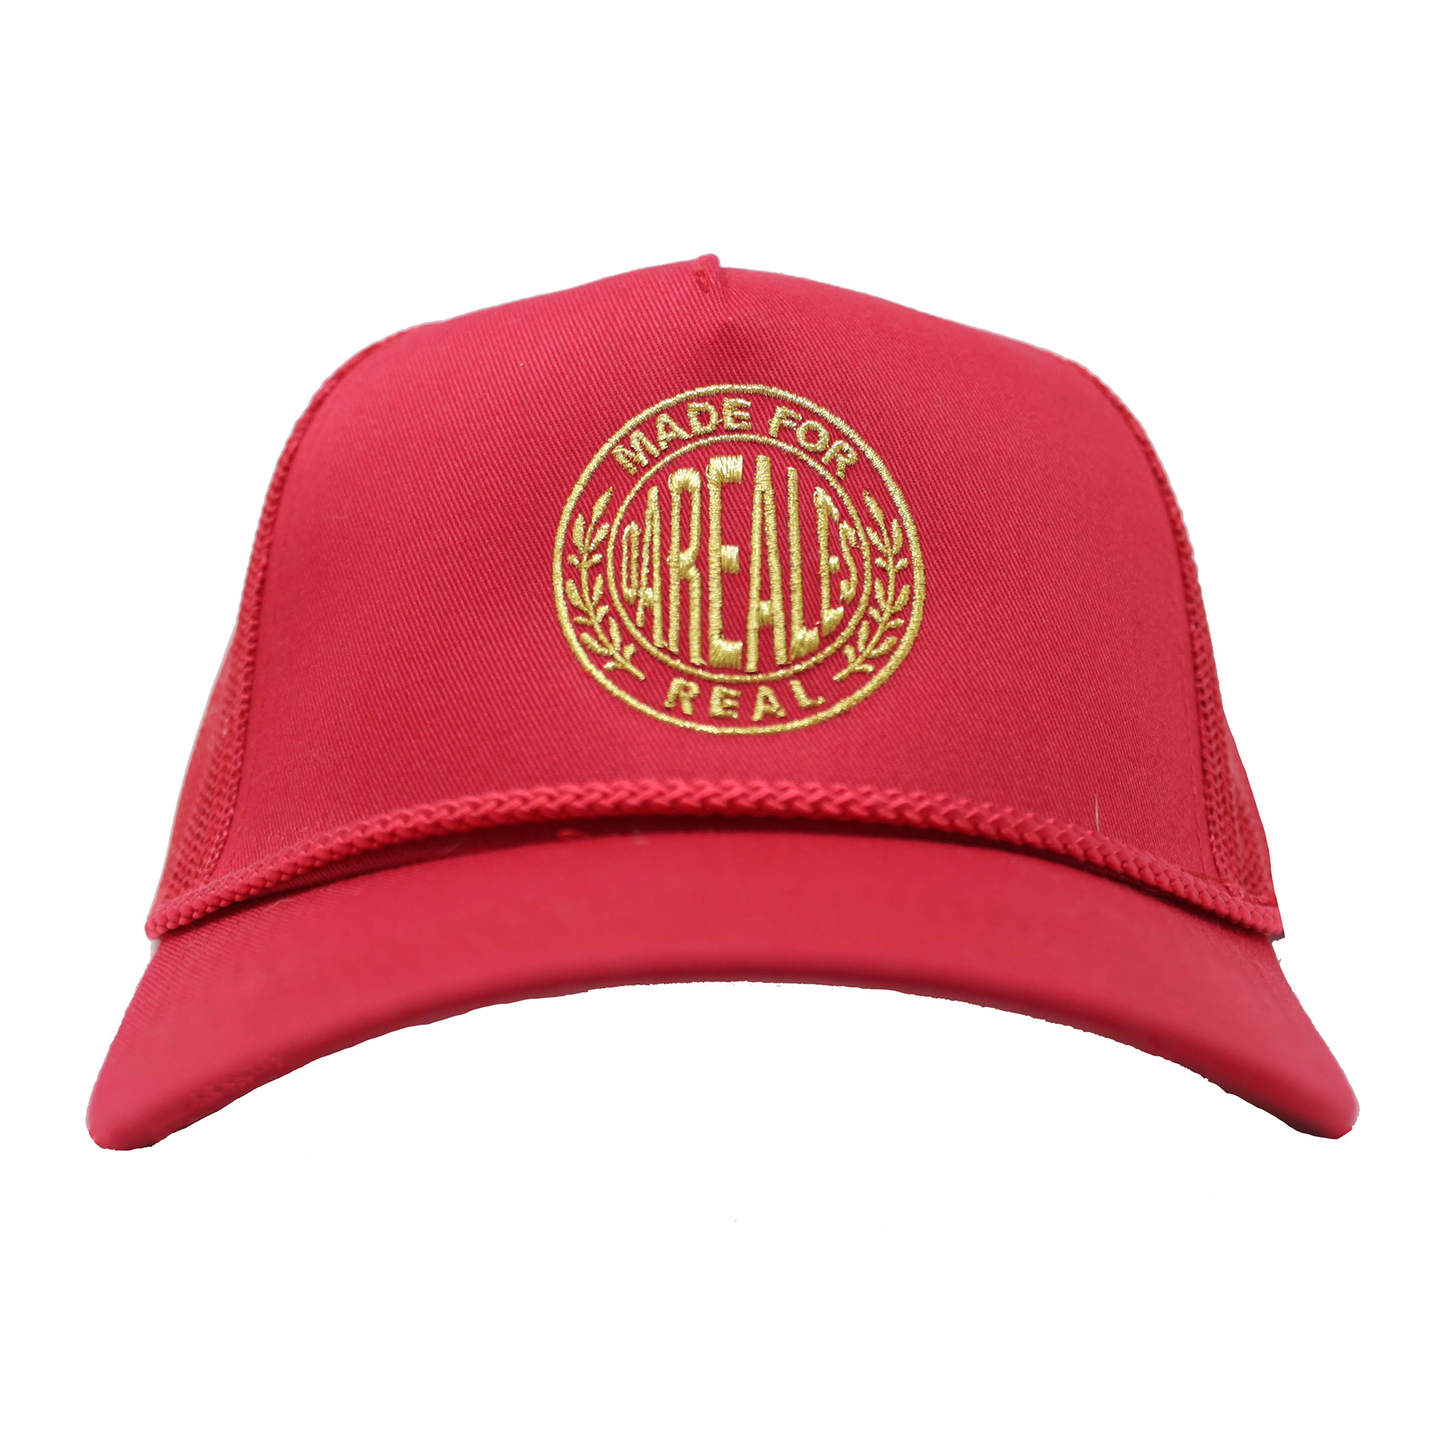 Crest Logo Cap - Red